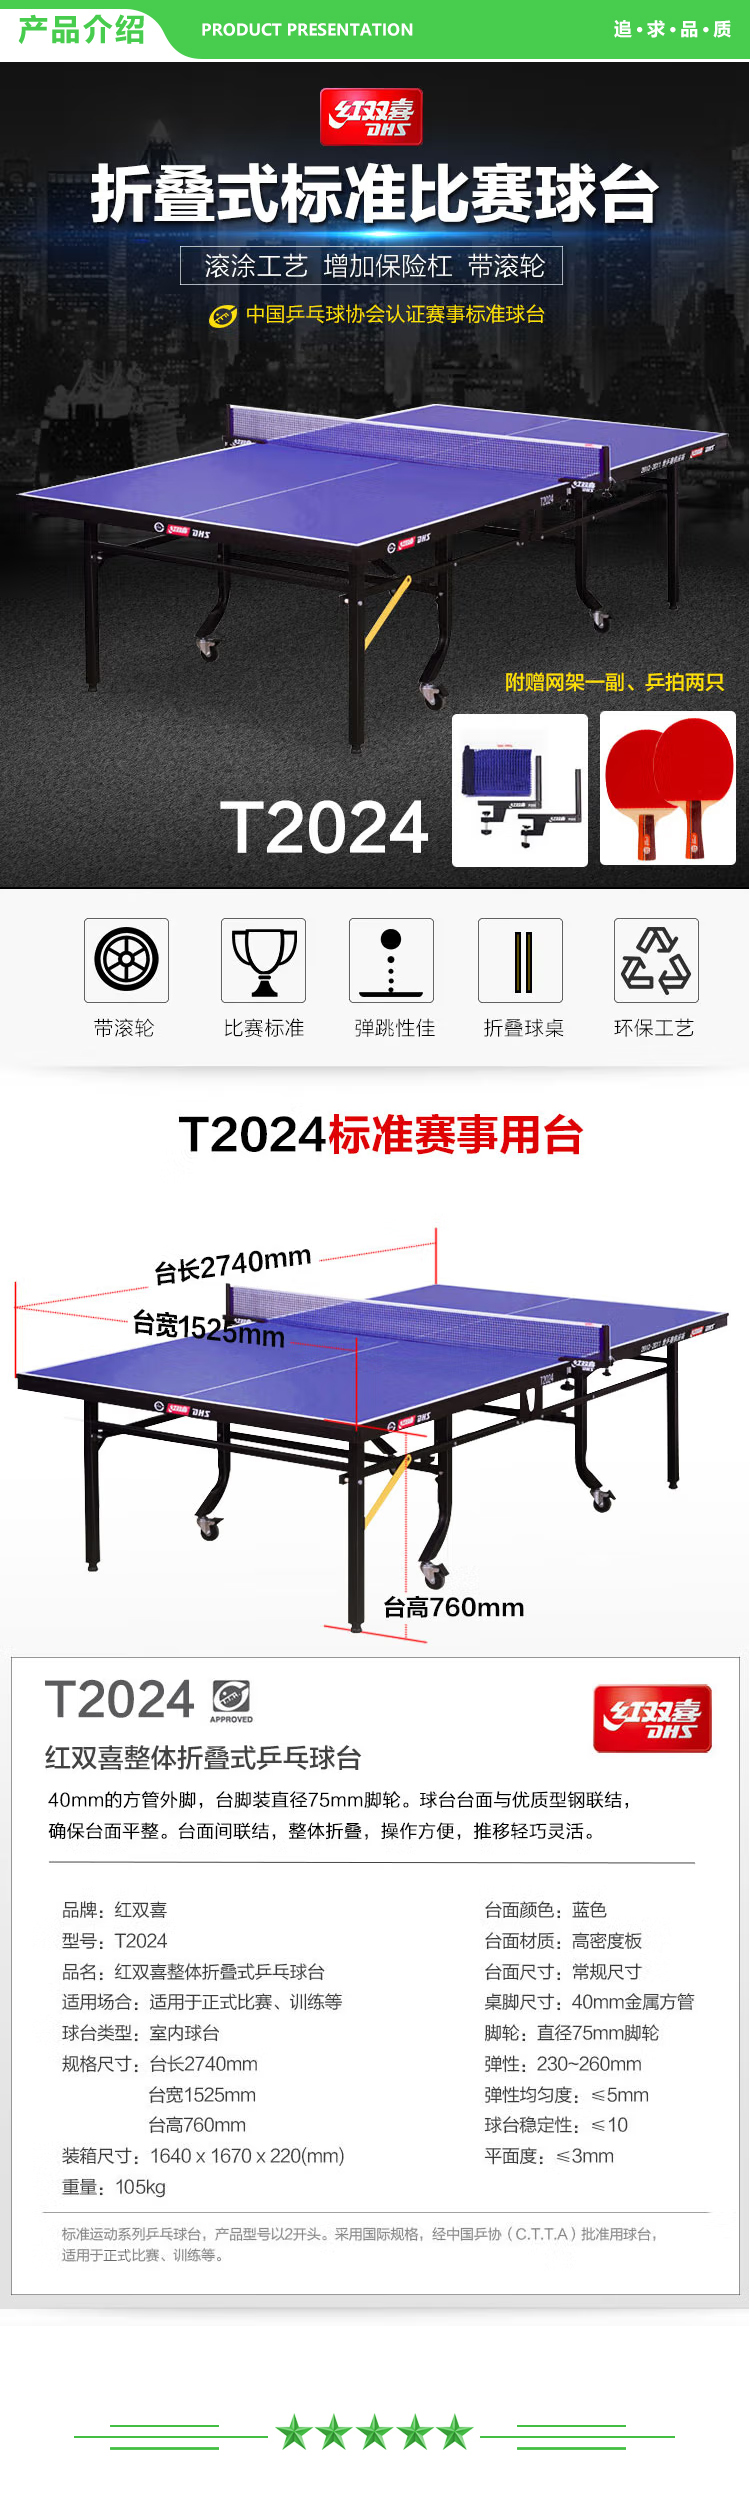 红双喜 DHS T2024 乒乓球桌 折叠式标准比赛球台(附网架一副、乒拍两只)  (2).jpg